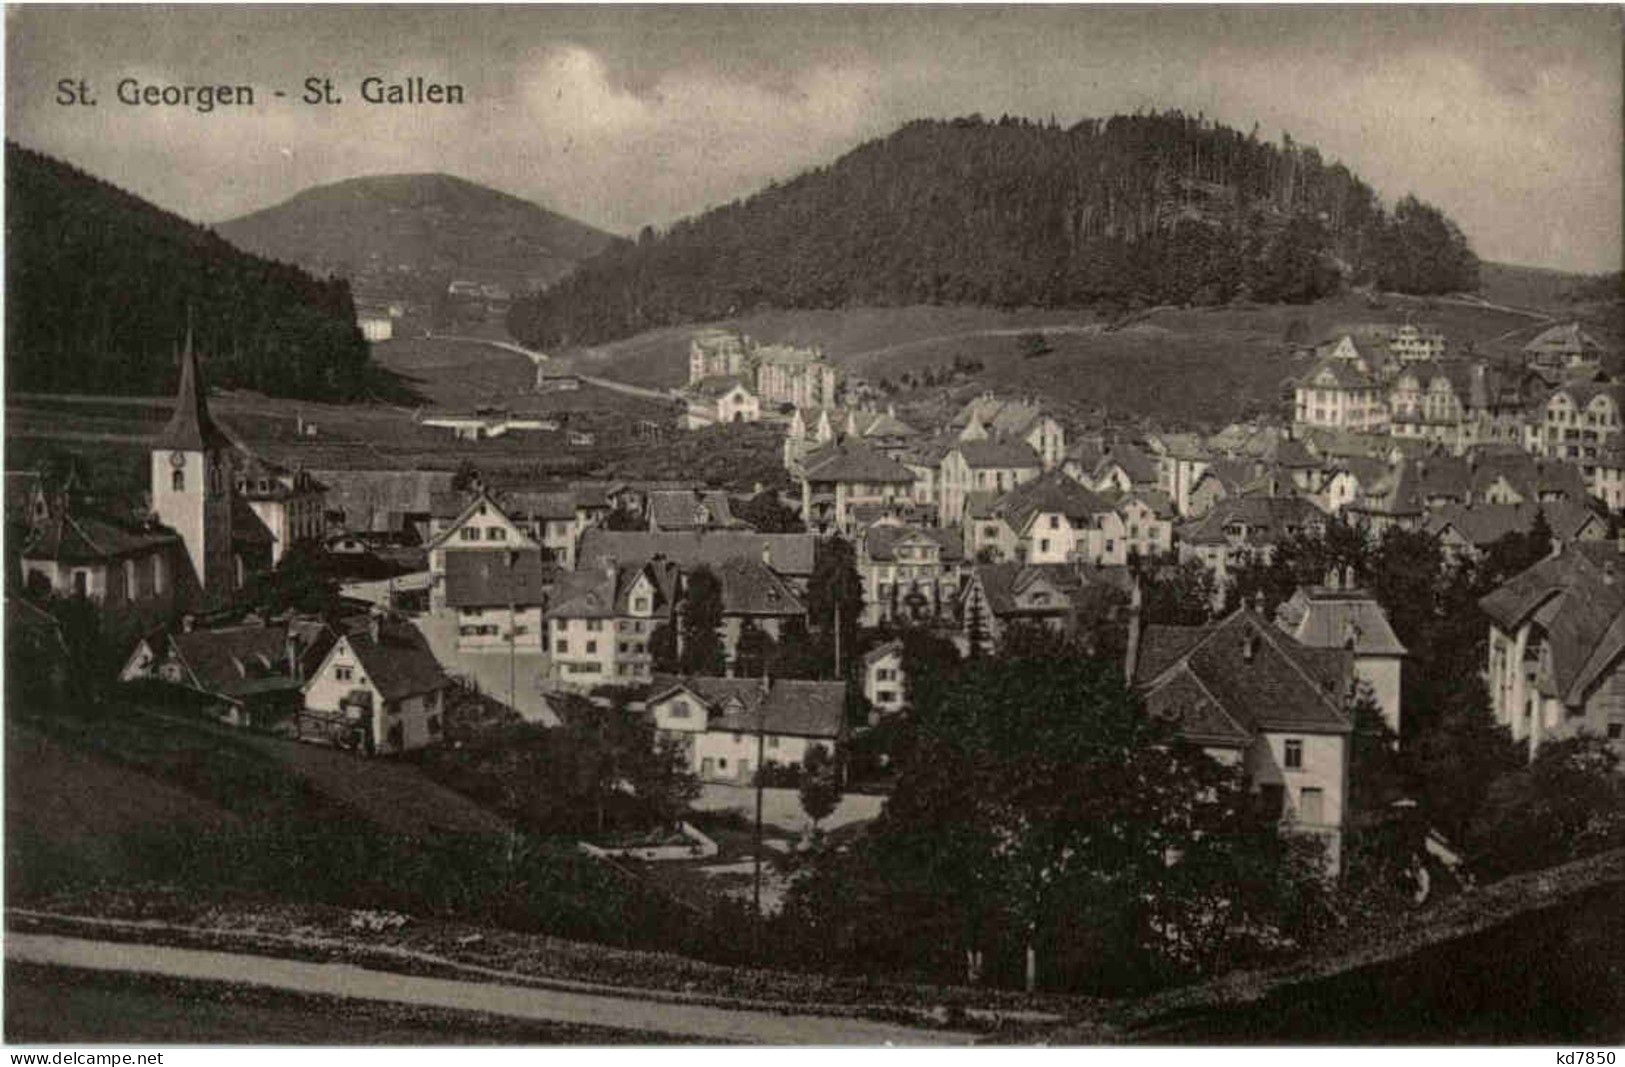 St. Gallen - St. Georgen - St. Gallen